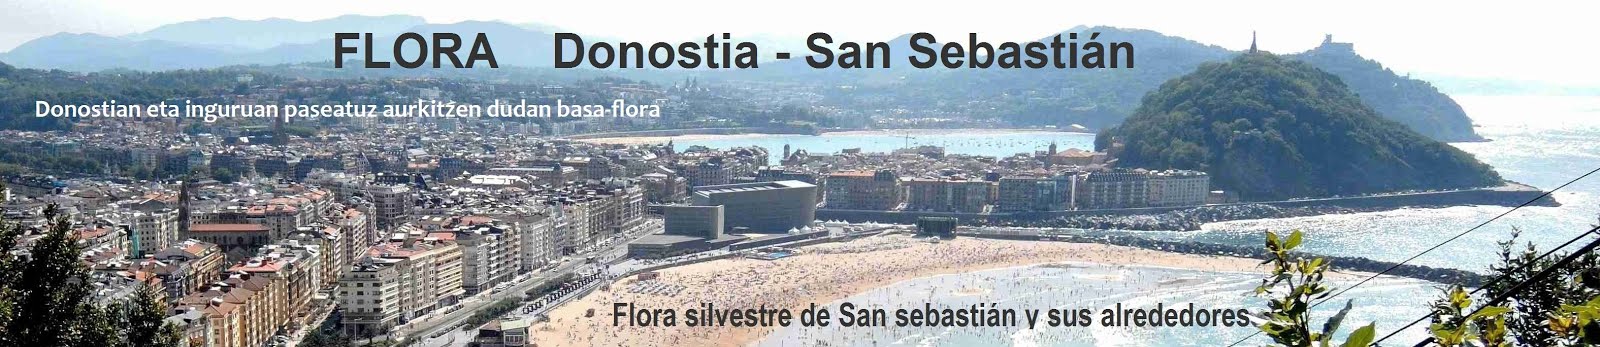 _____ FLORA ___     Donostia-San Sebastián